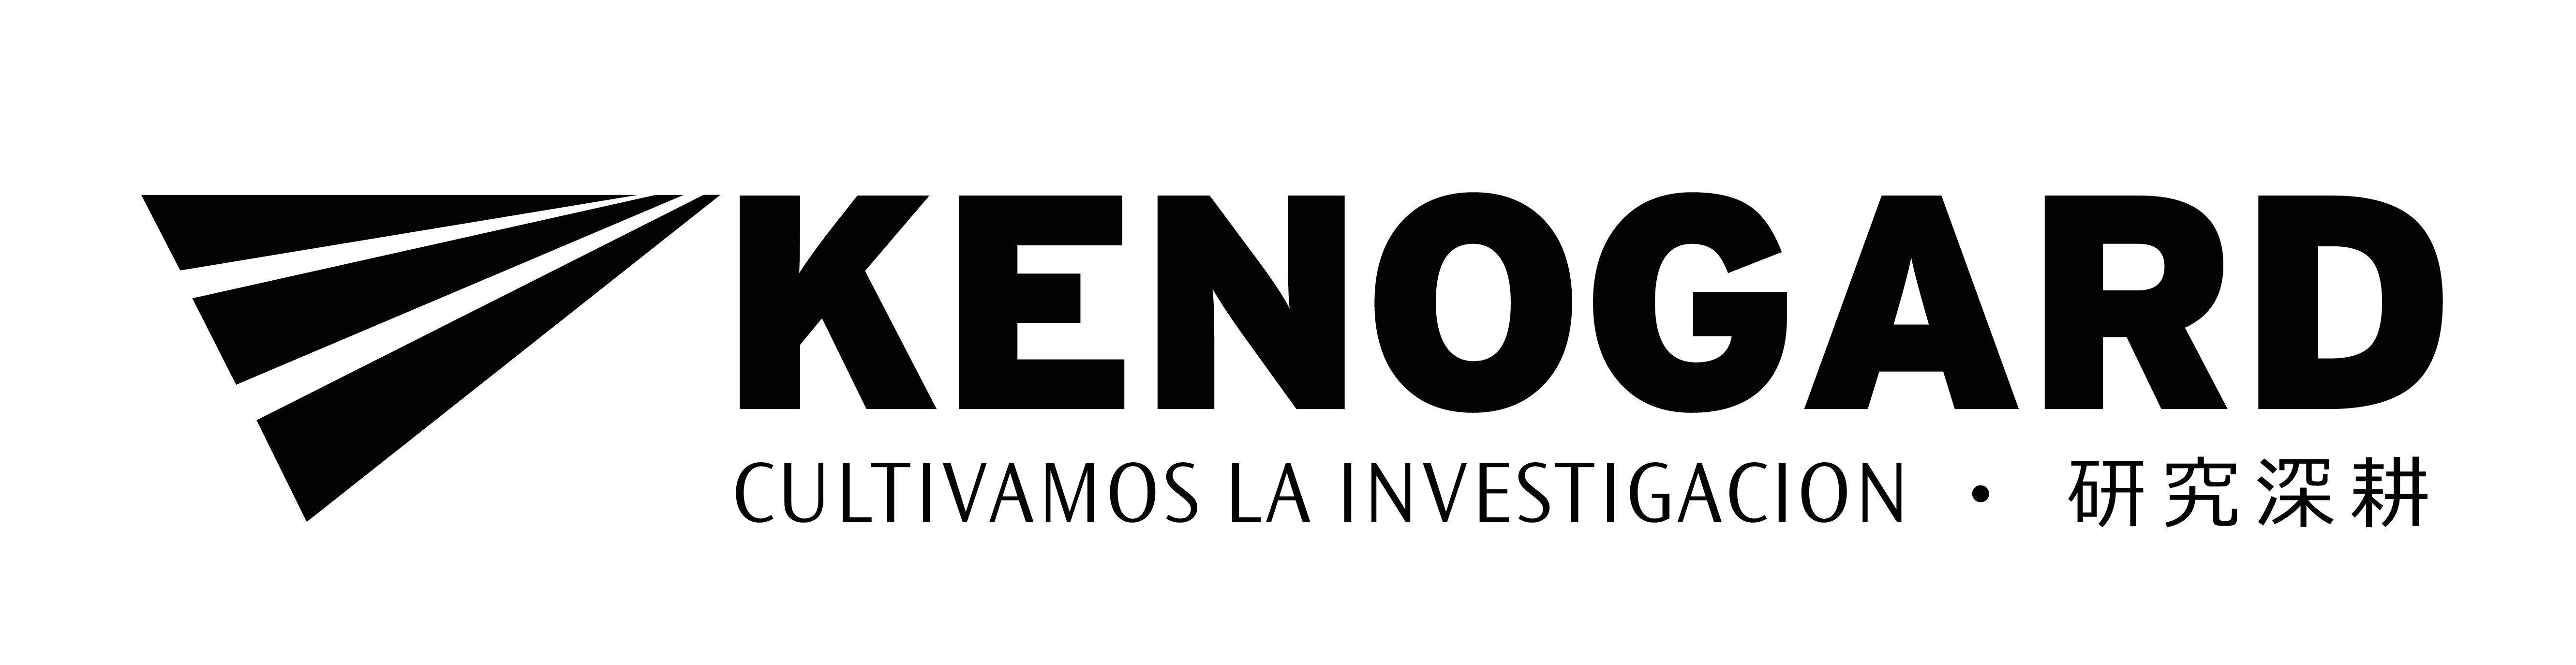 logo kenogard